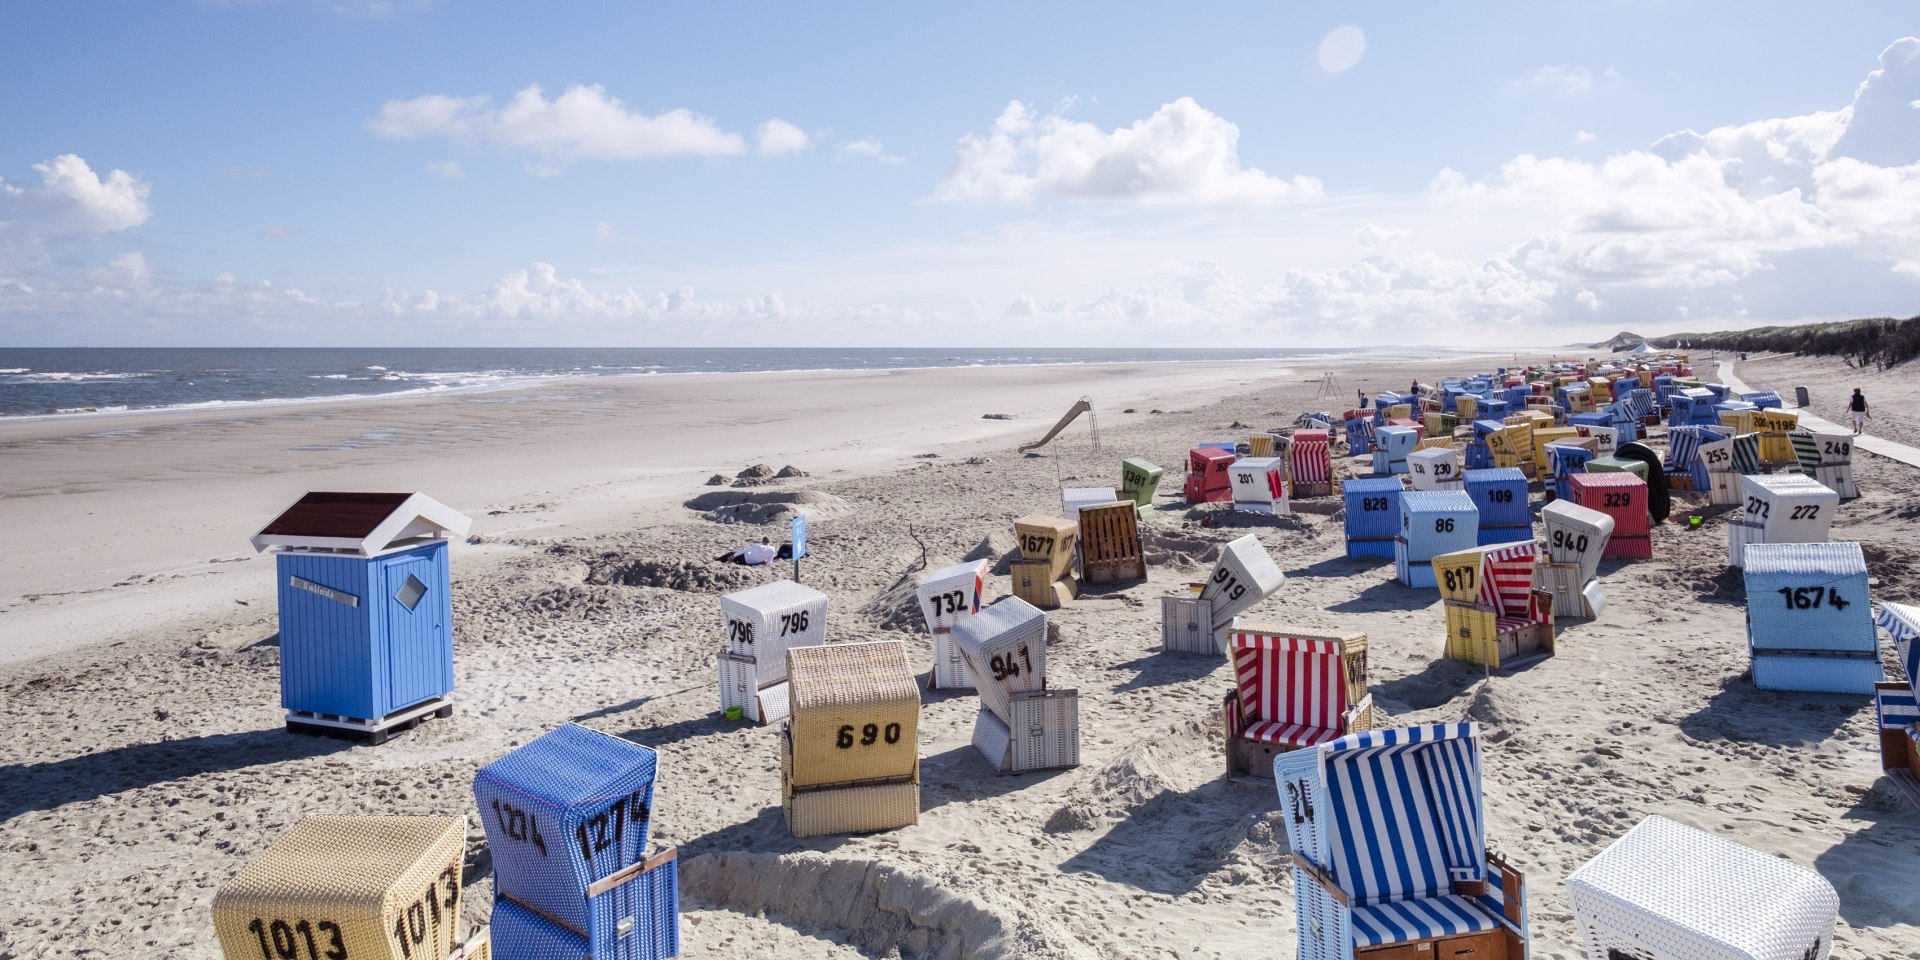 Strandleben auf Langeoog im Sommer, © Tourismus-Service Langeoog/ Martin Foddanu